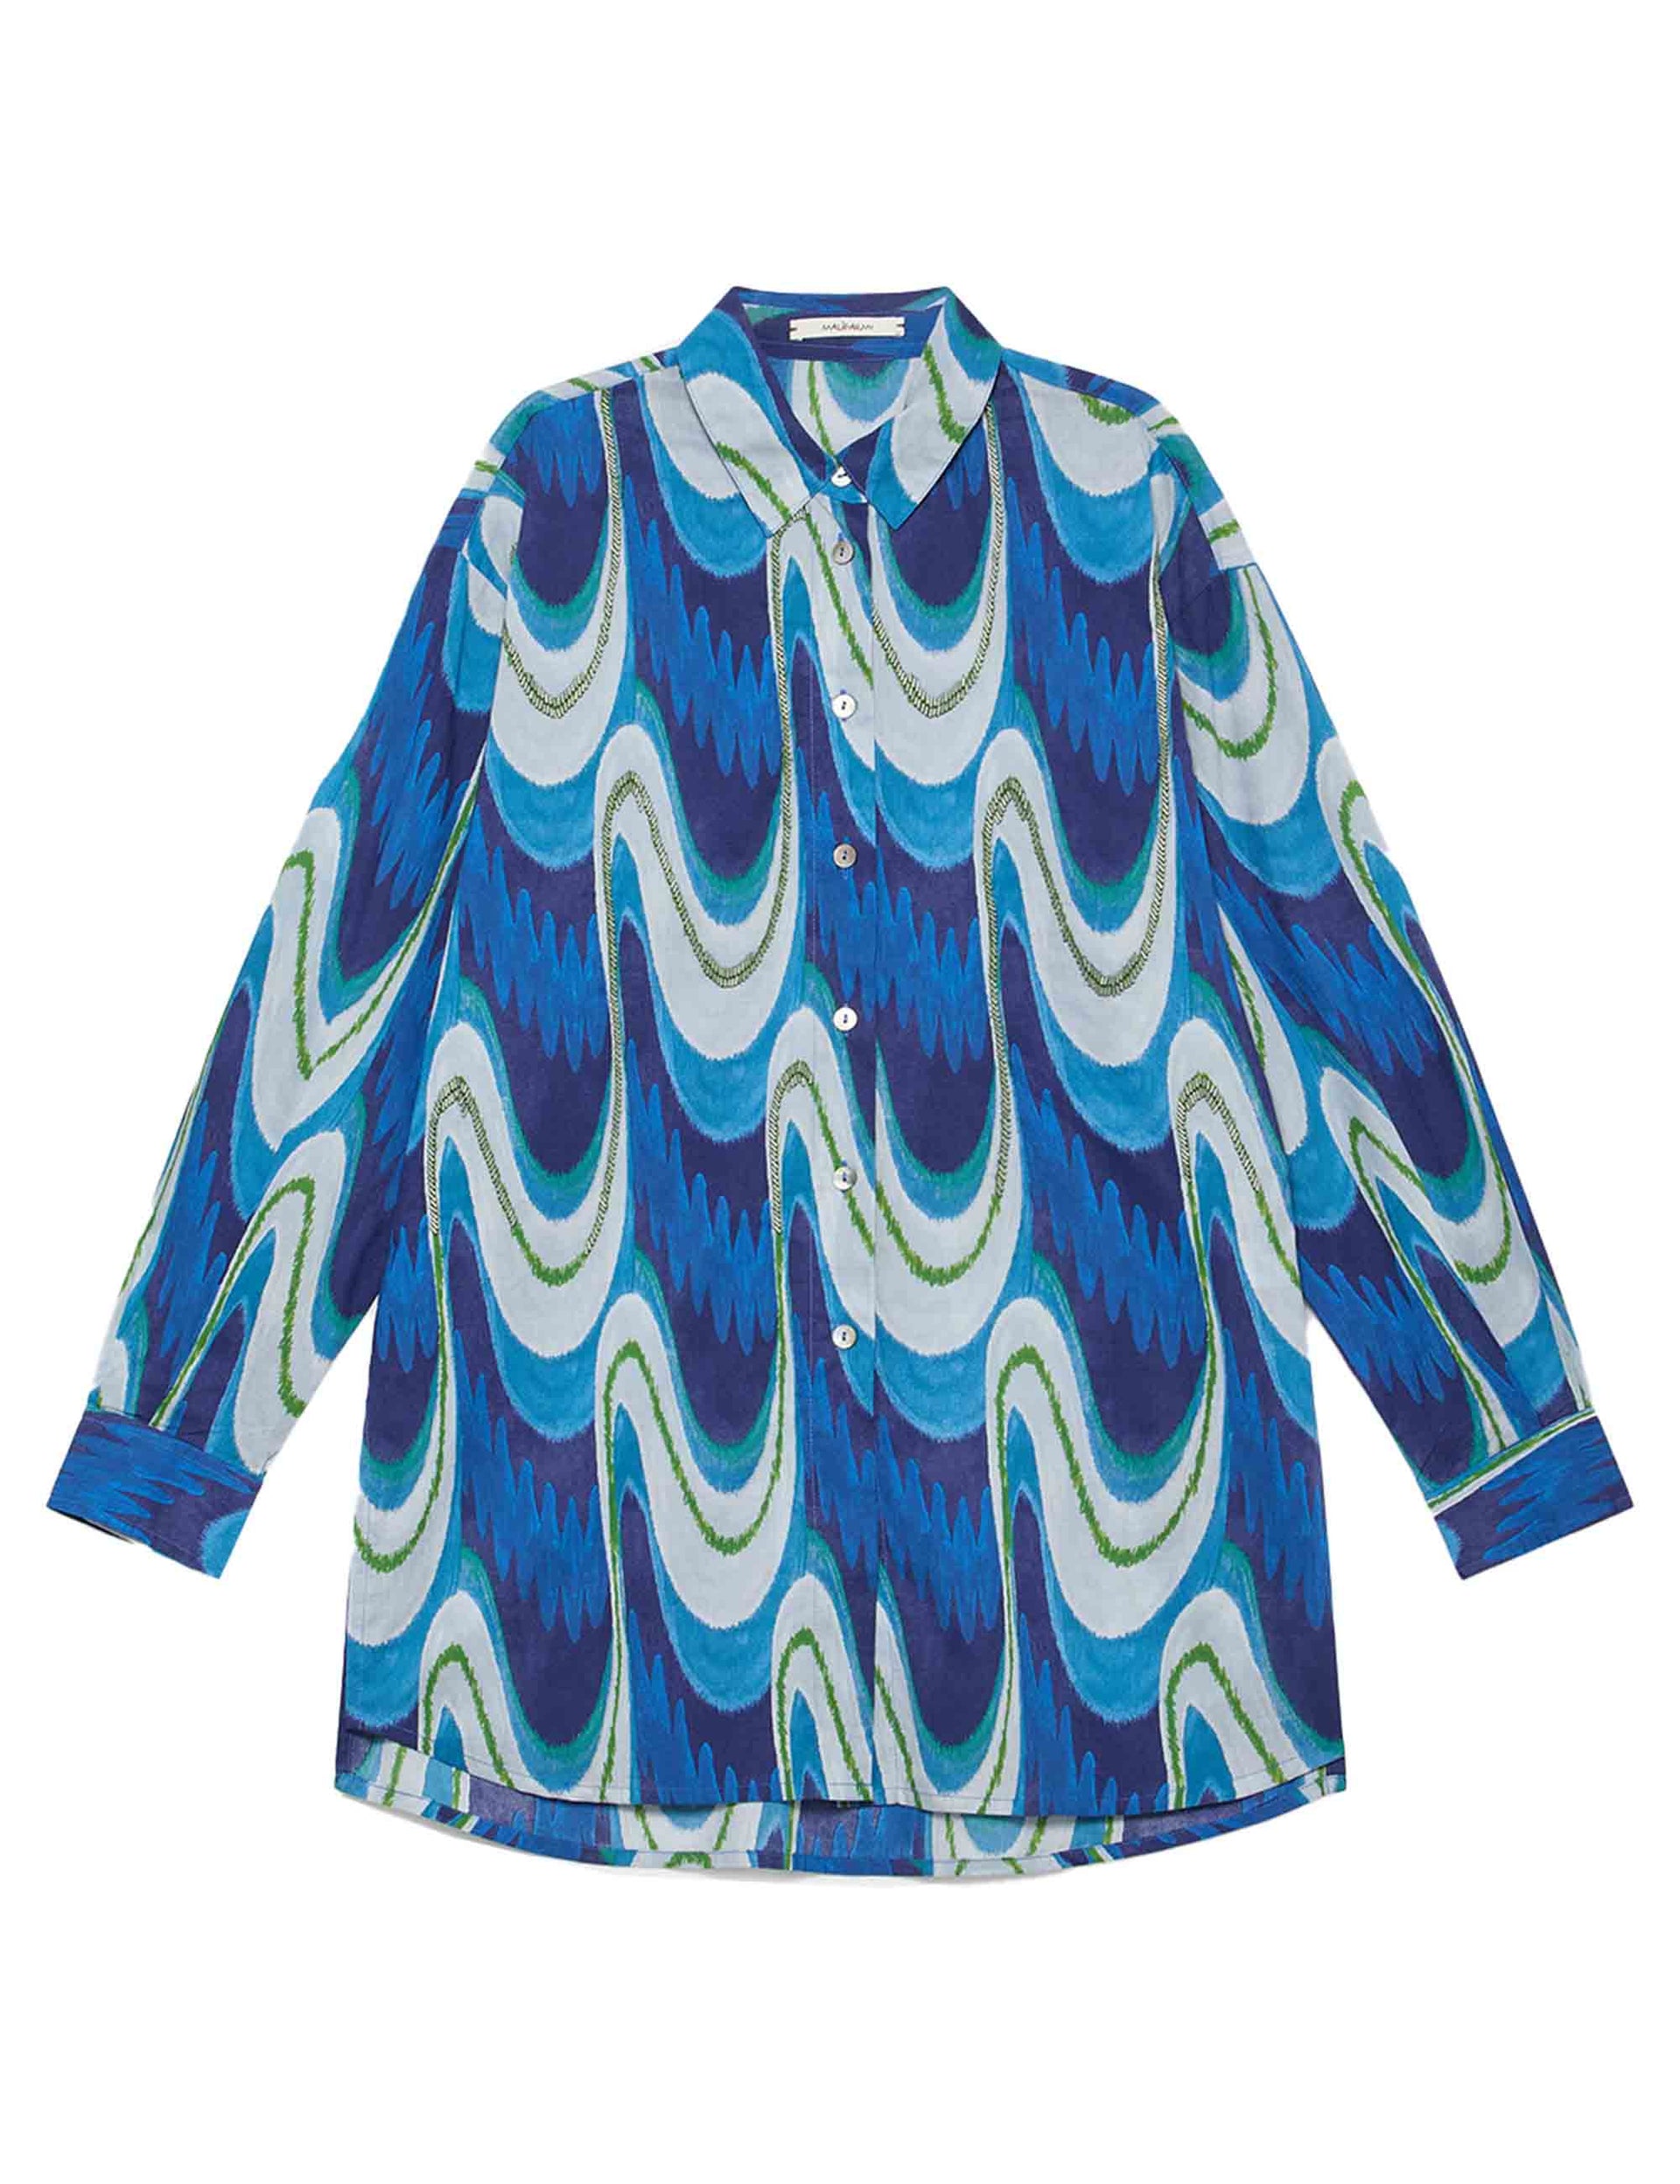 Camicie donna Ikat Wave Muslin in cotone blu e azzurro